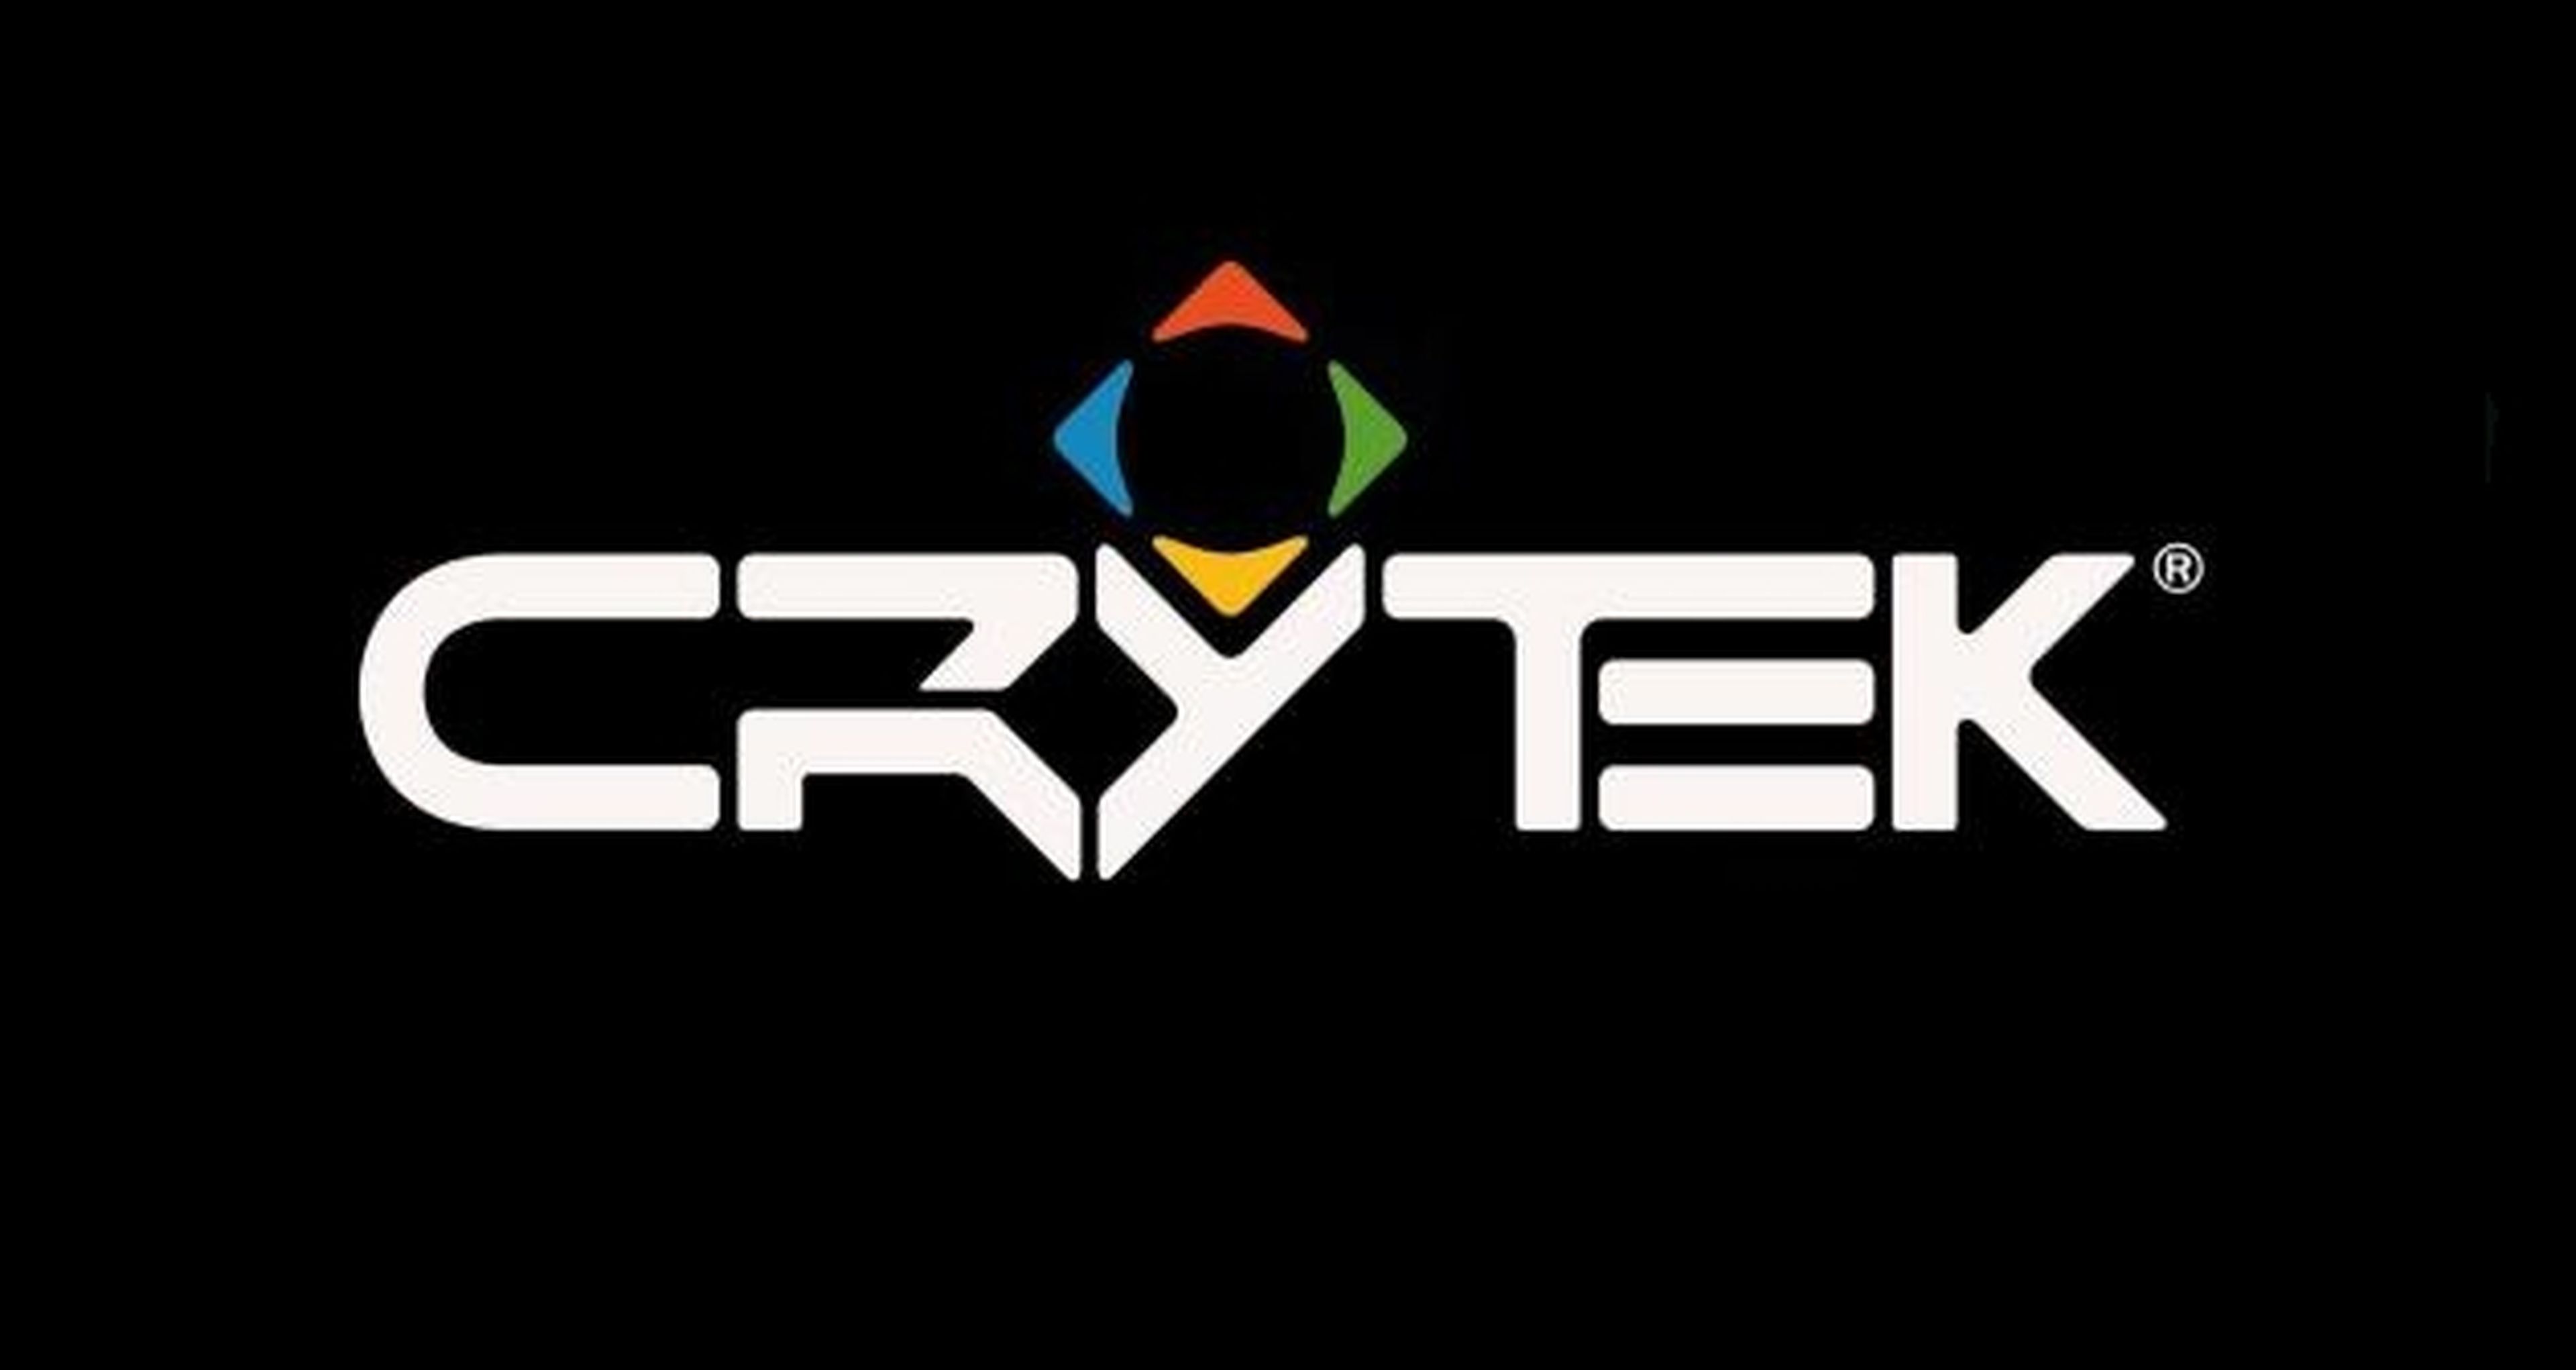 Las webs de Crytek sufren un ataque